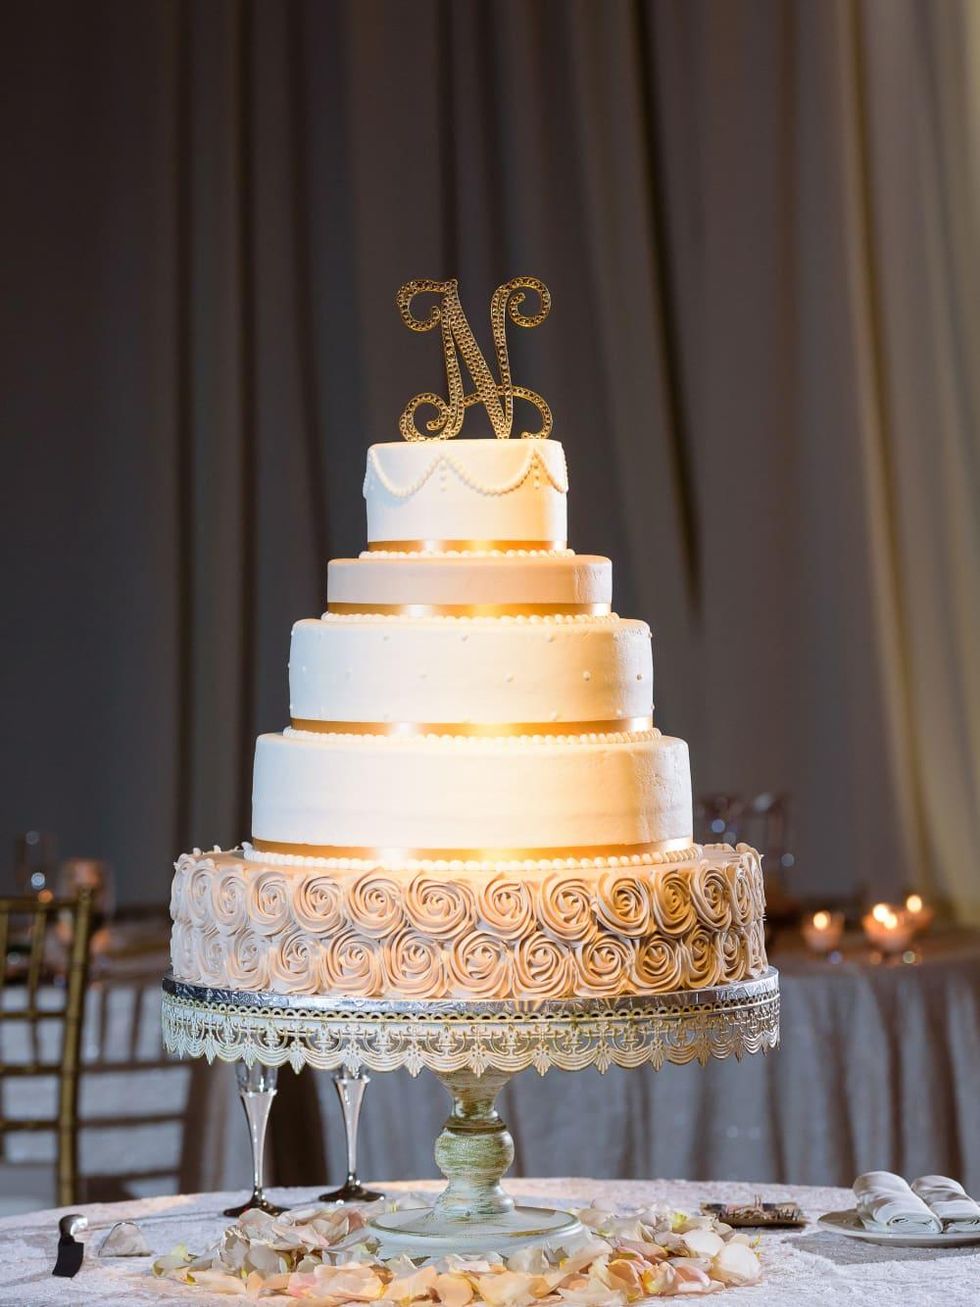 Neely wedding, cake